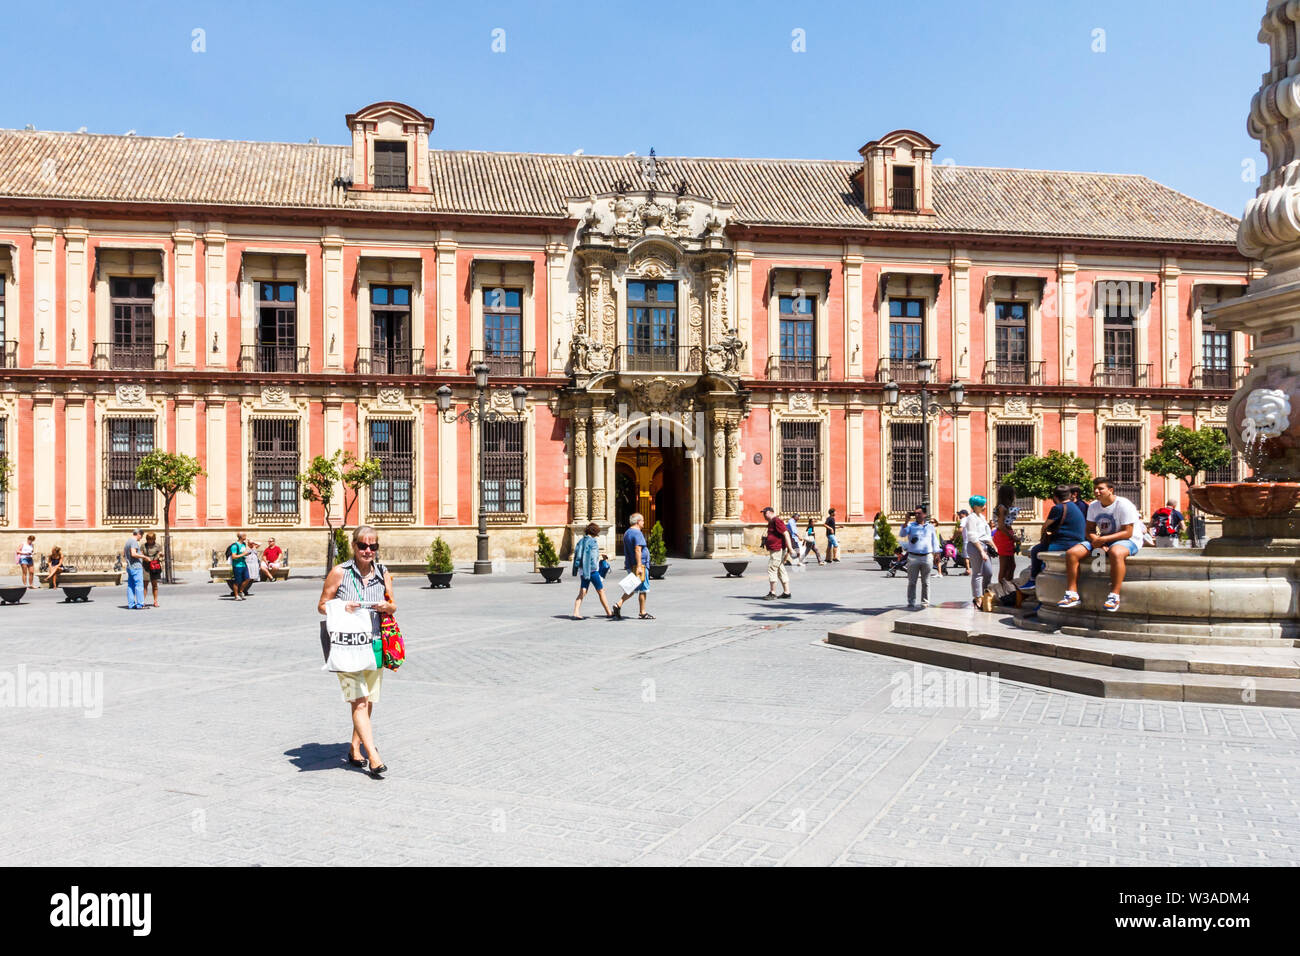 Siviglia, Spagna - 3 Settembre 2015: i turisti a piedi attorno a Plaza Virgen de los Reyes. Questa è una delle principali piazze della città vecchia. Foto Stock